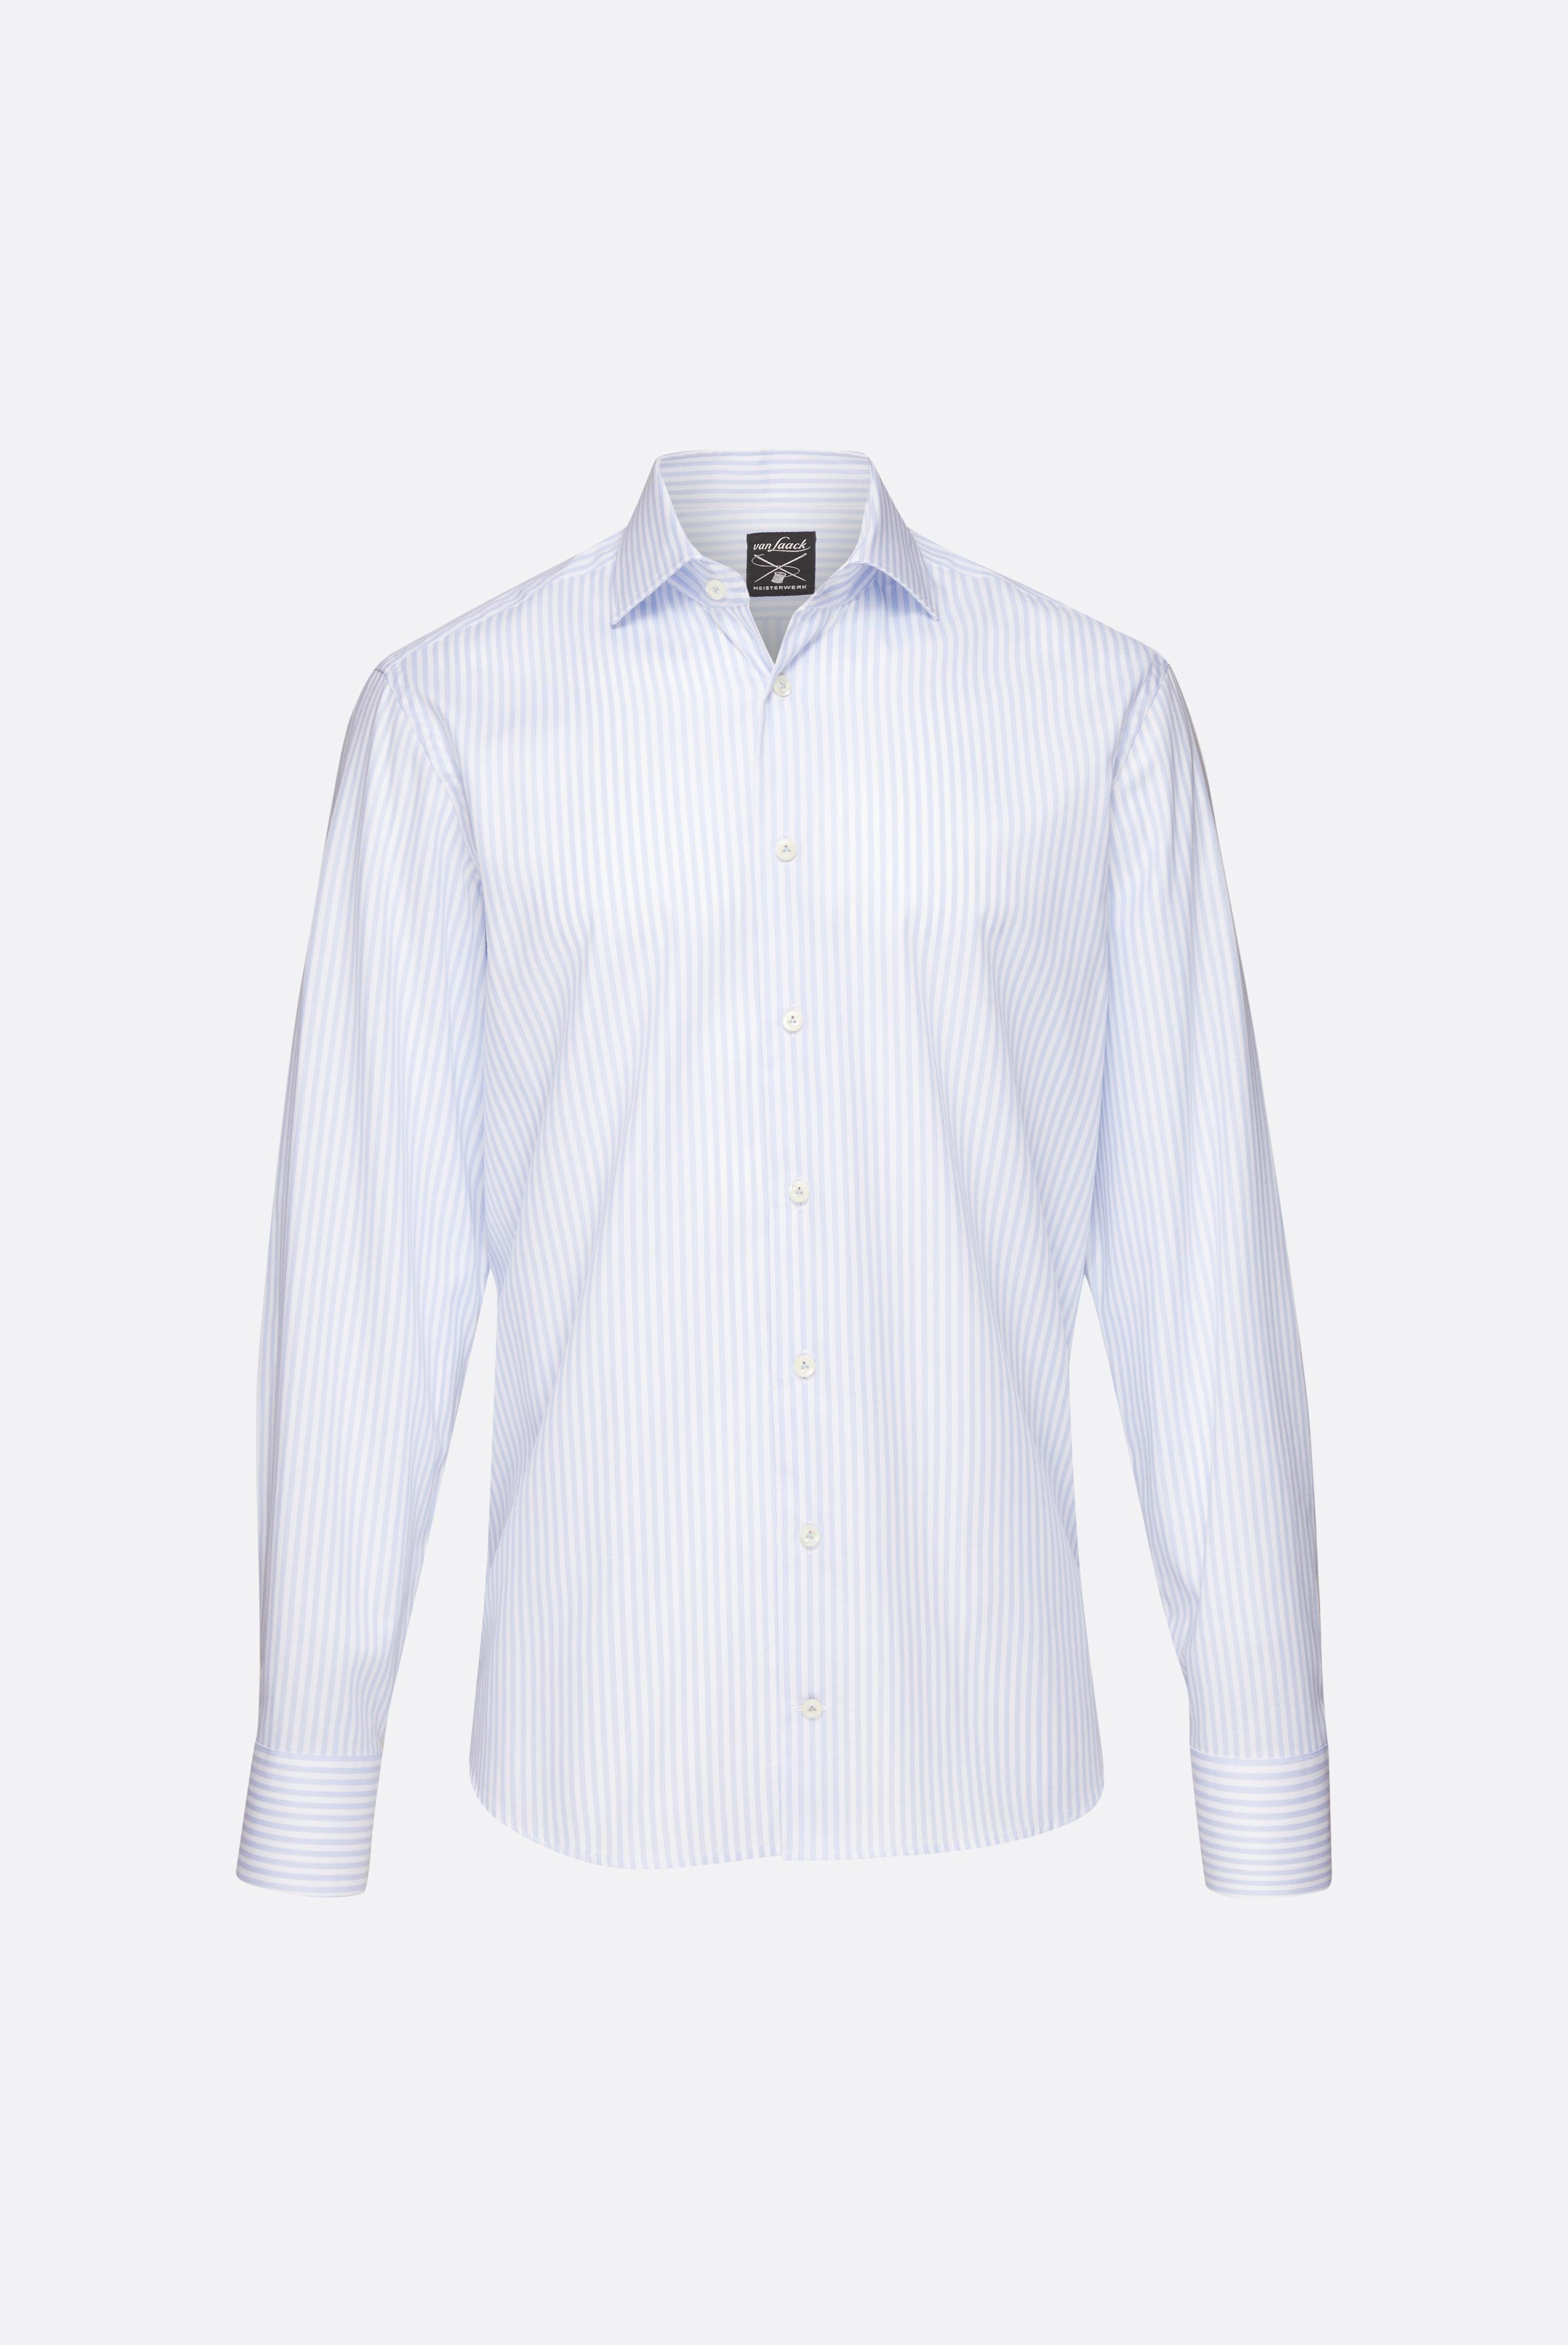 Bügelleichte Hemden+Bügelfreies Hemd mit Streifen Tailor Fit+20.2020.BQ.152101.007.38